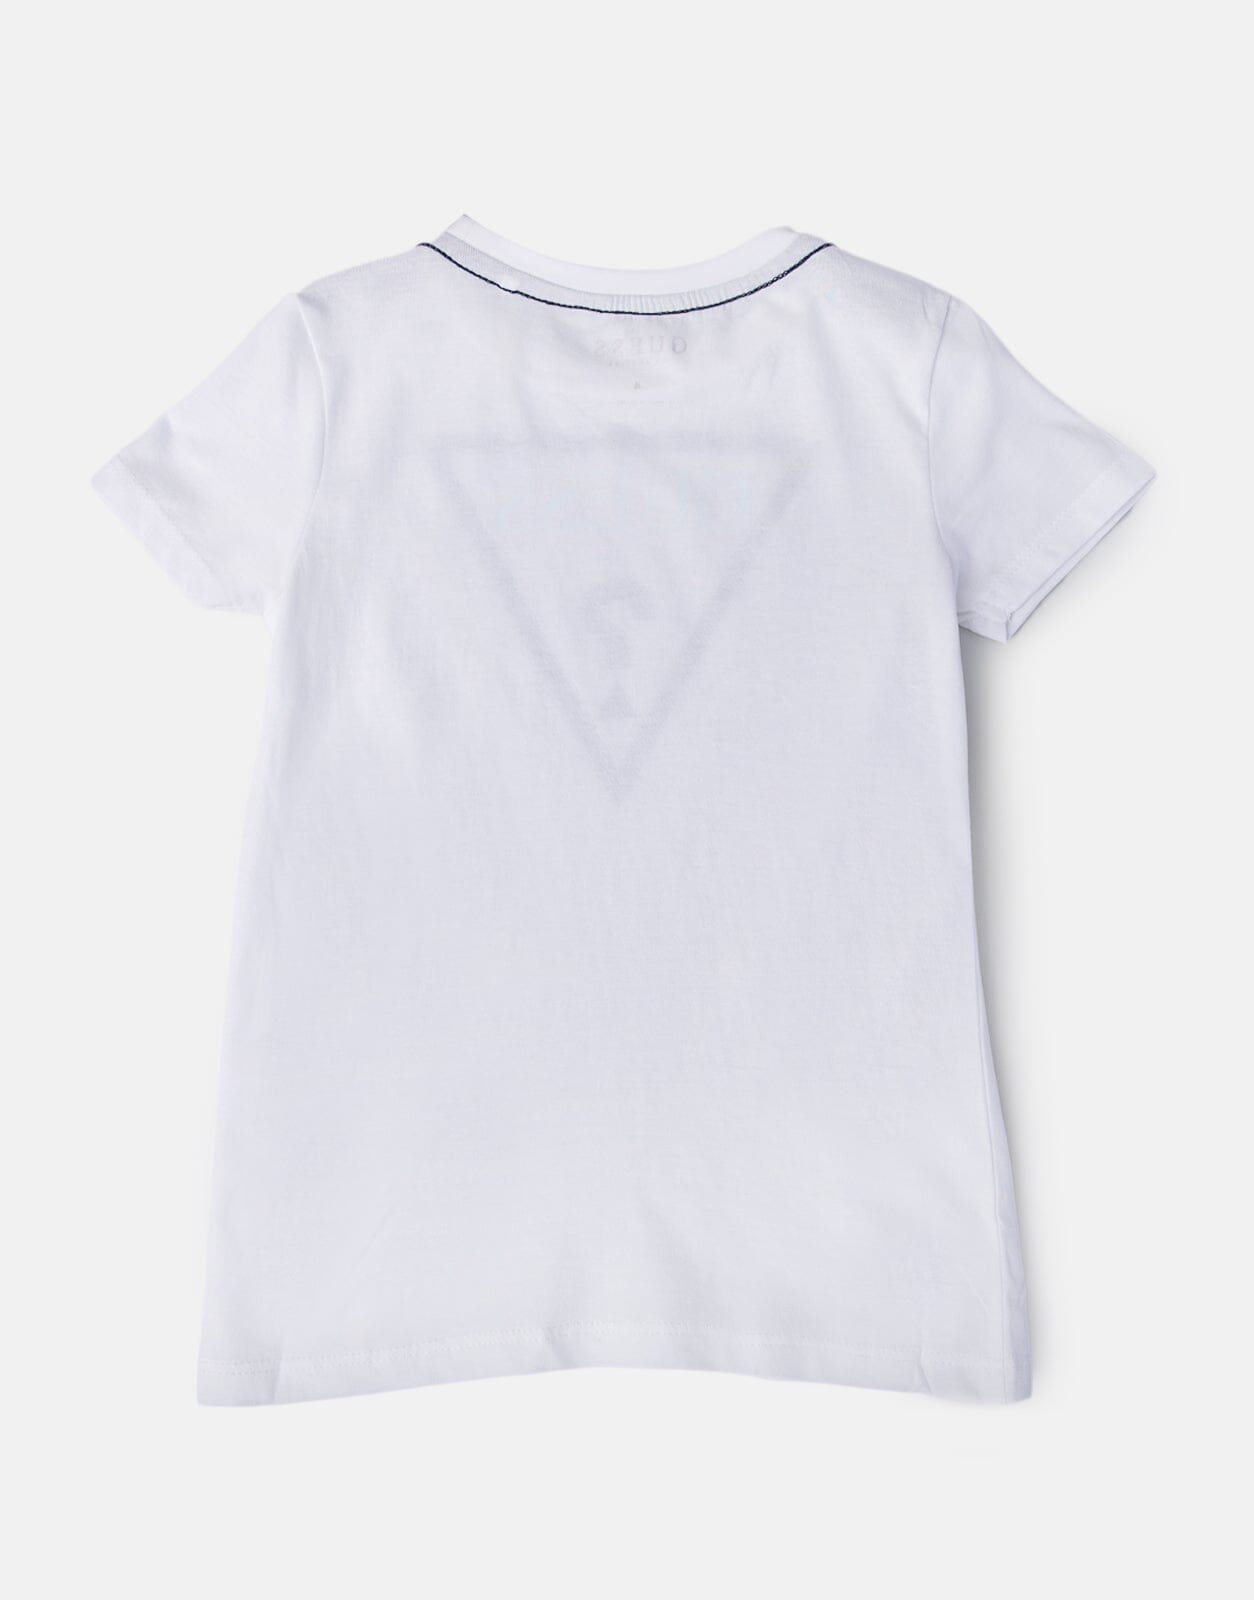 Guess Kids Core Triangle White T-Shirt - Subwear